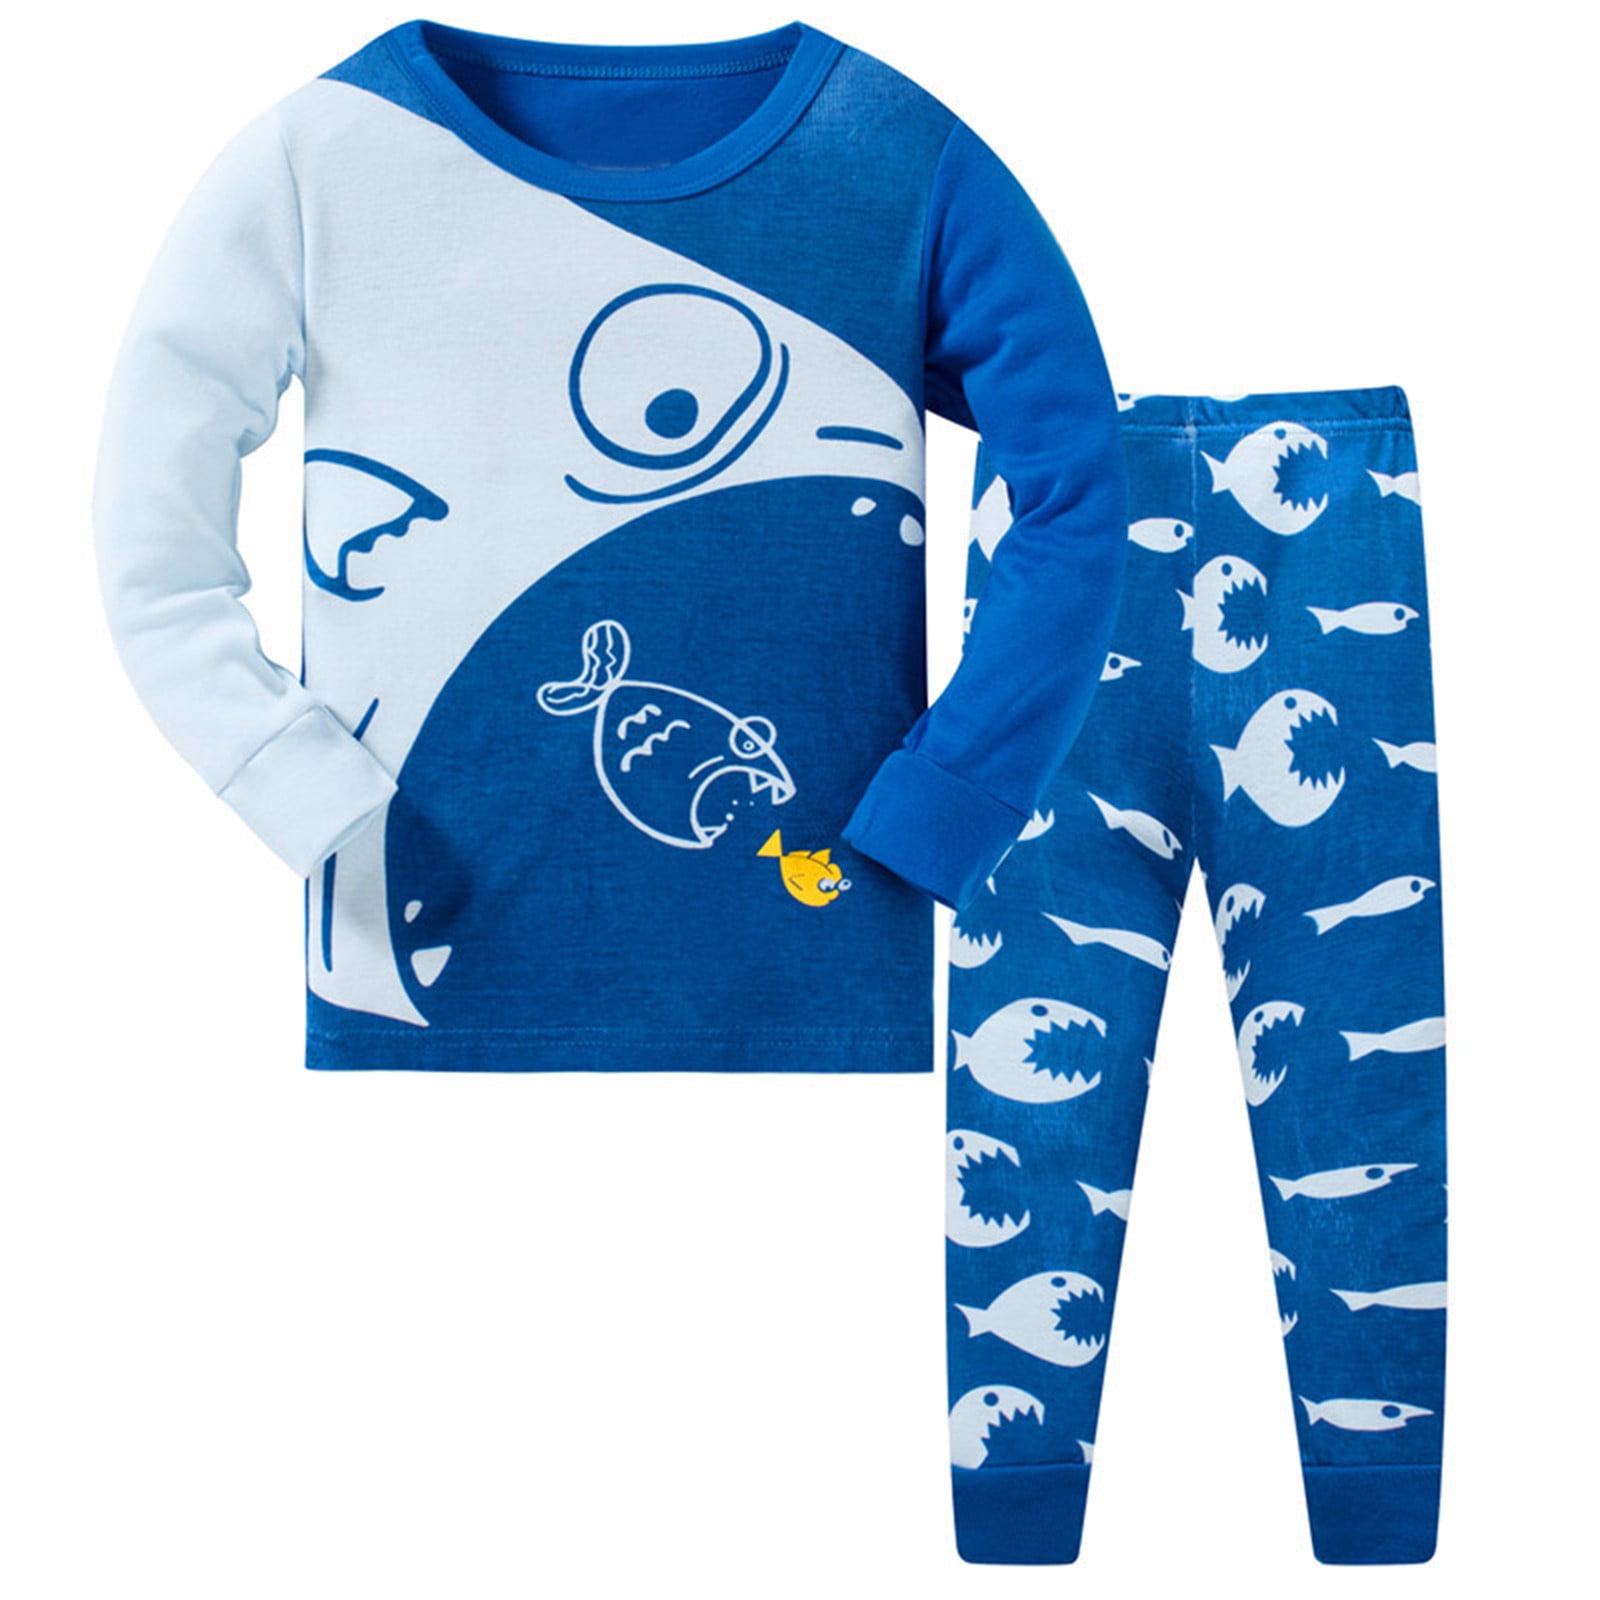 Christmas Toddler Boys Pajamas Animal Cotton Kids 2 Piece Pj's Long ...